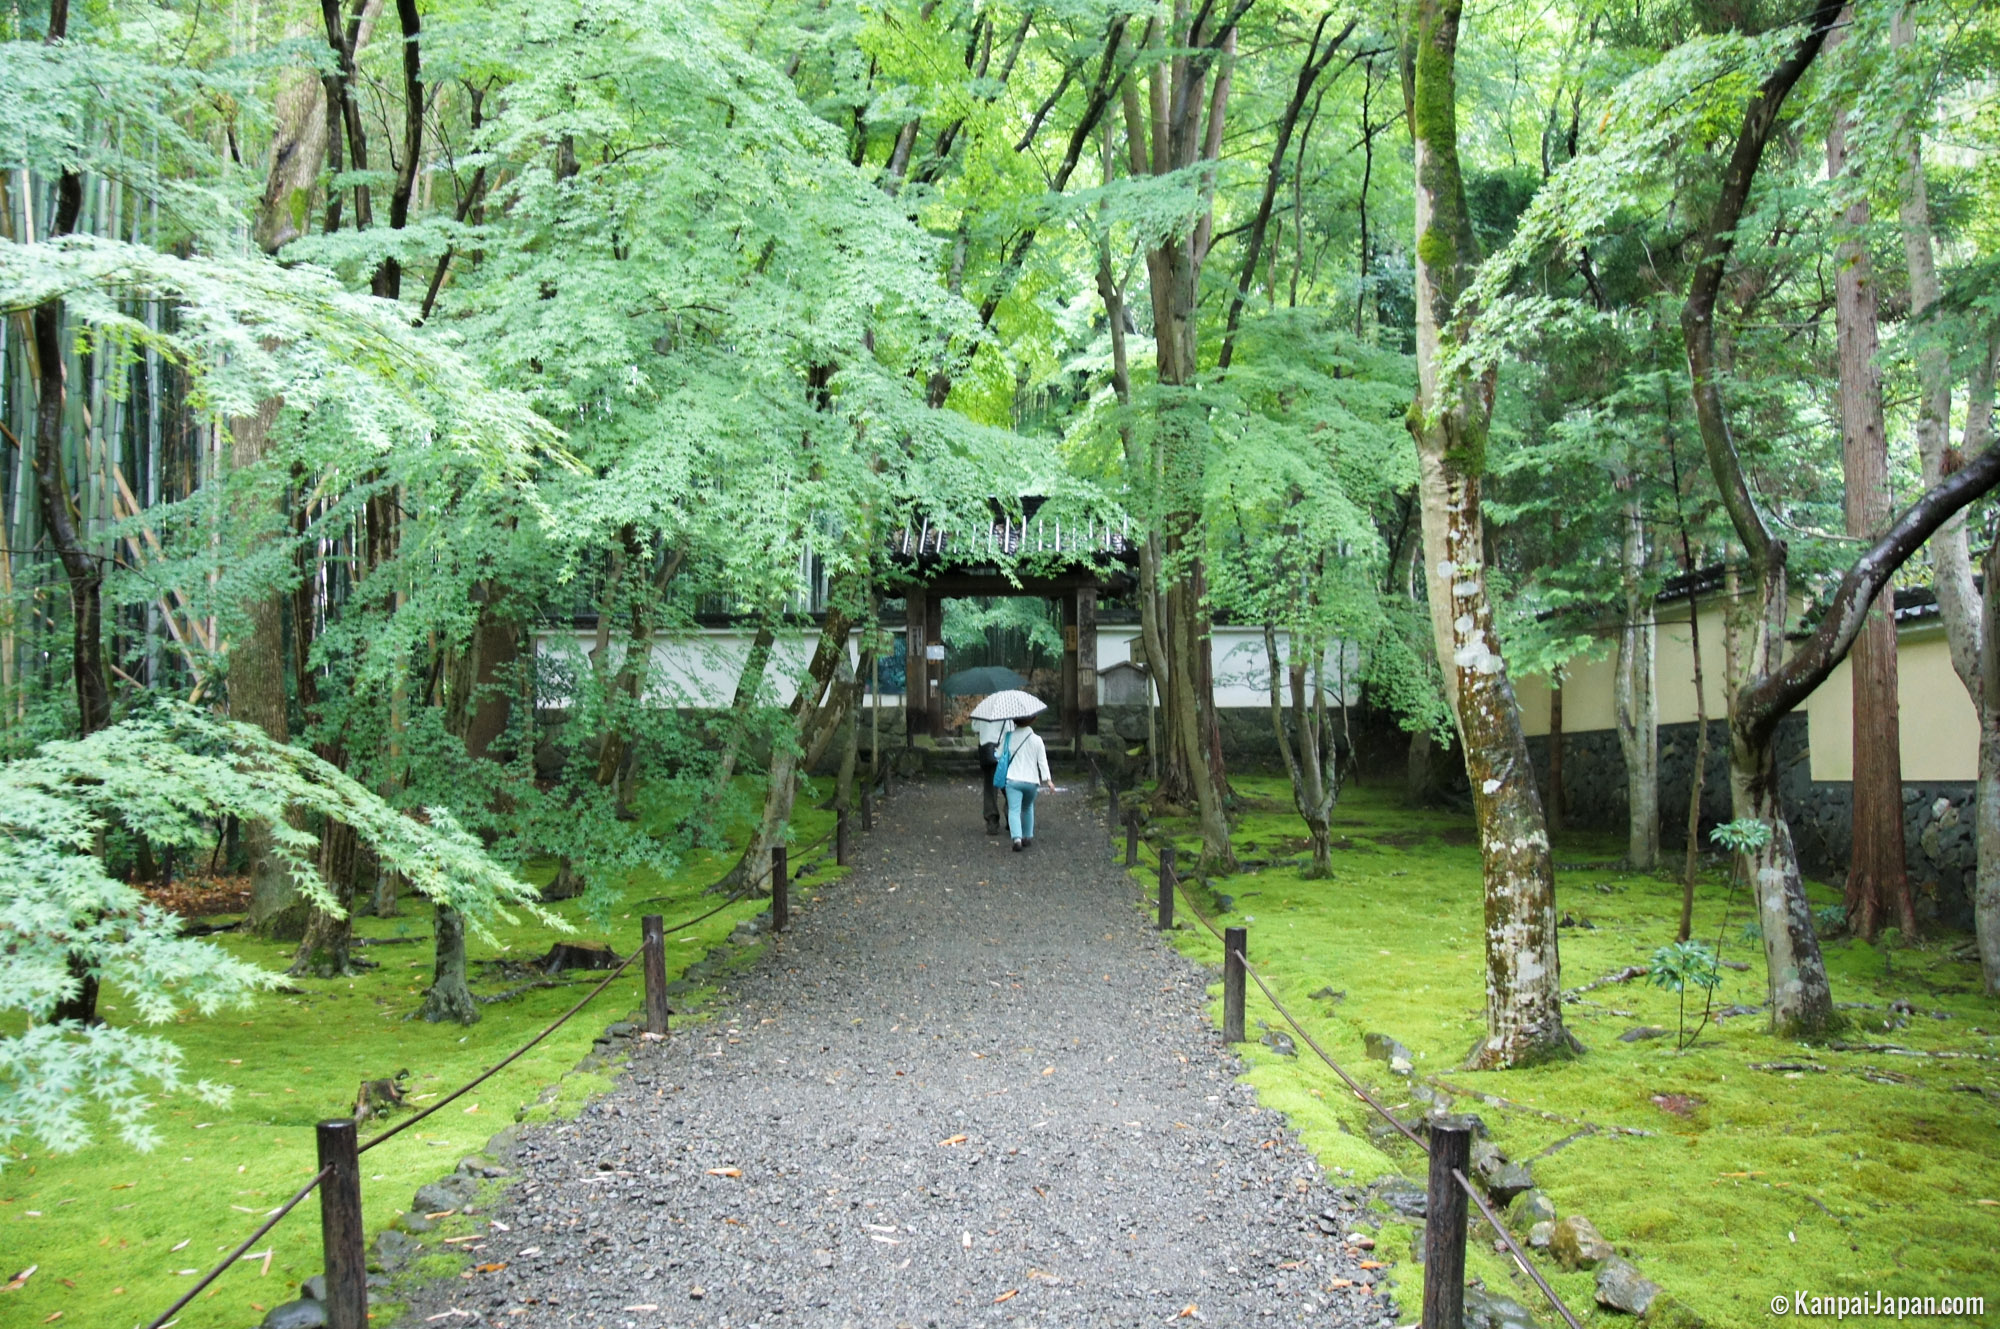 Jizo-in - Kyoto’s Small Bamboo Temple